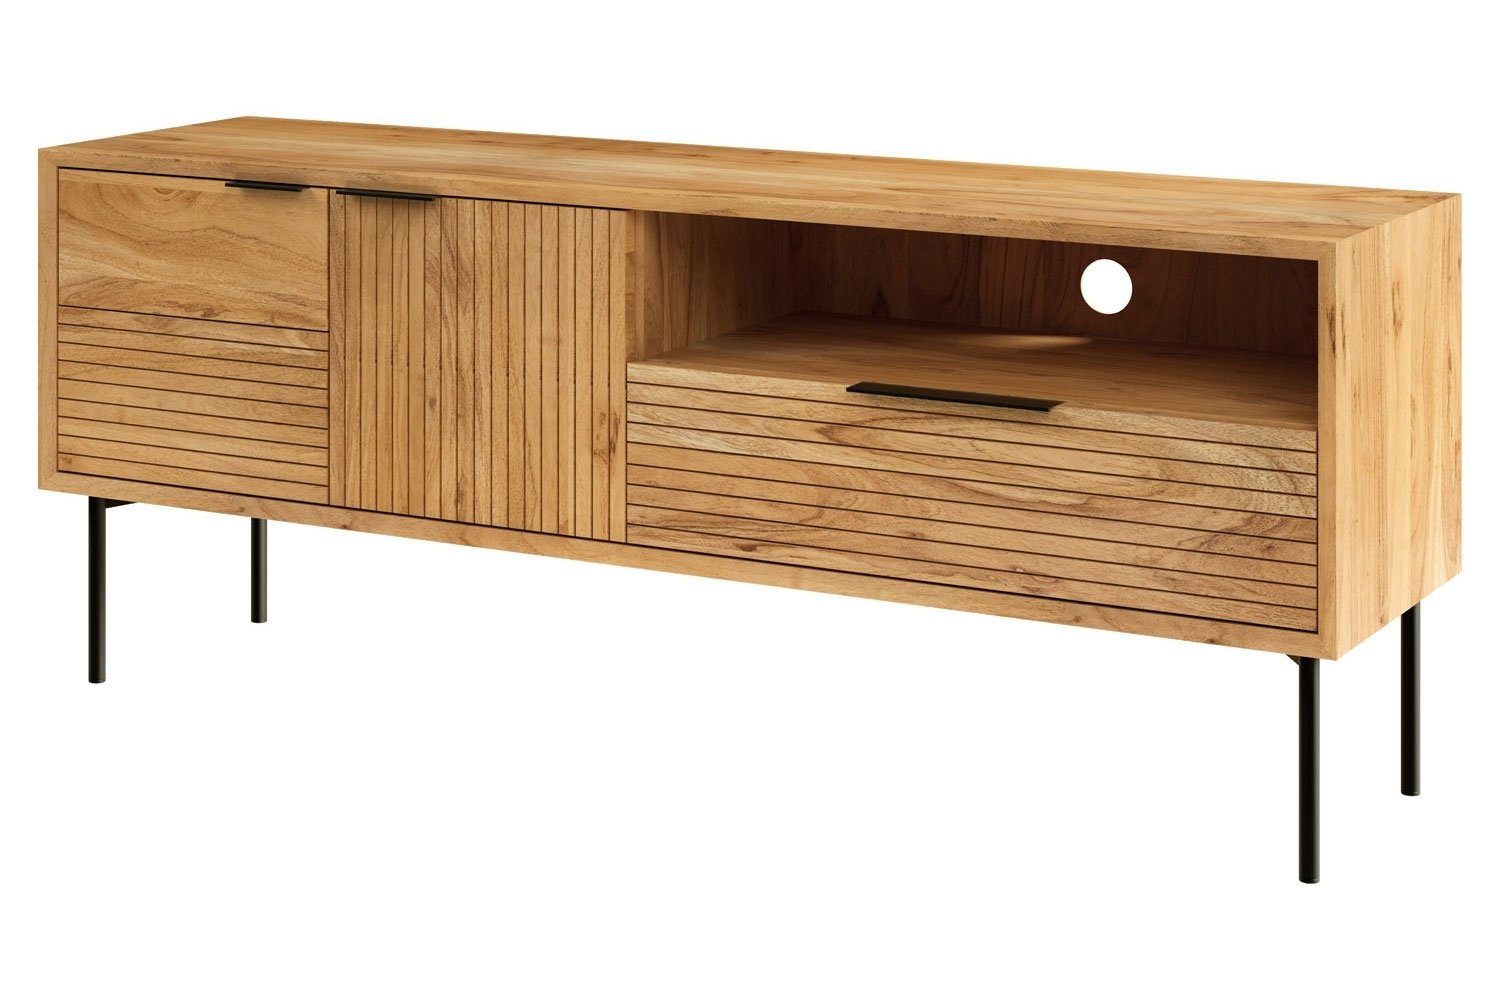 MONDO Lowboard TV-Schrank KIAN, 155 x 42 cm, Akazie teilmassiv, mit 2 Türen, 1 Schublade und offenes Fach